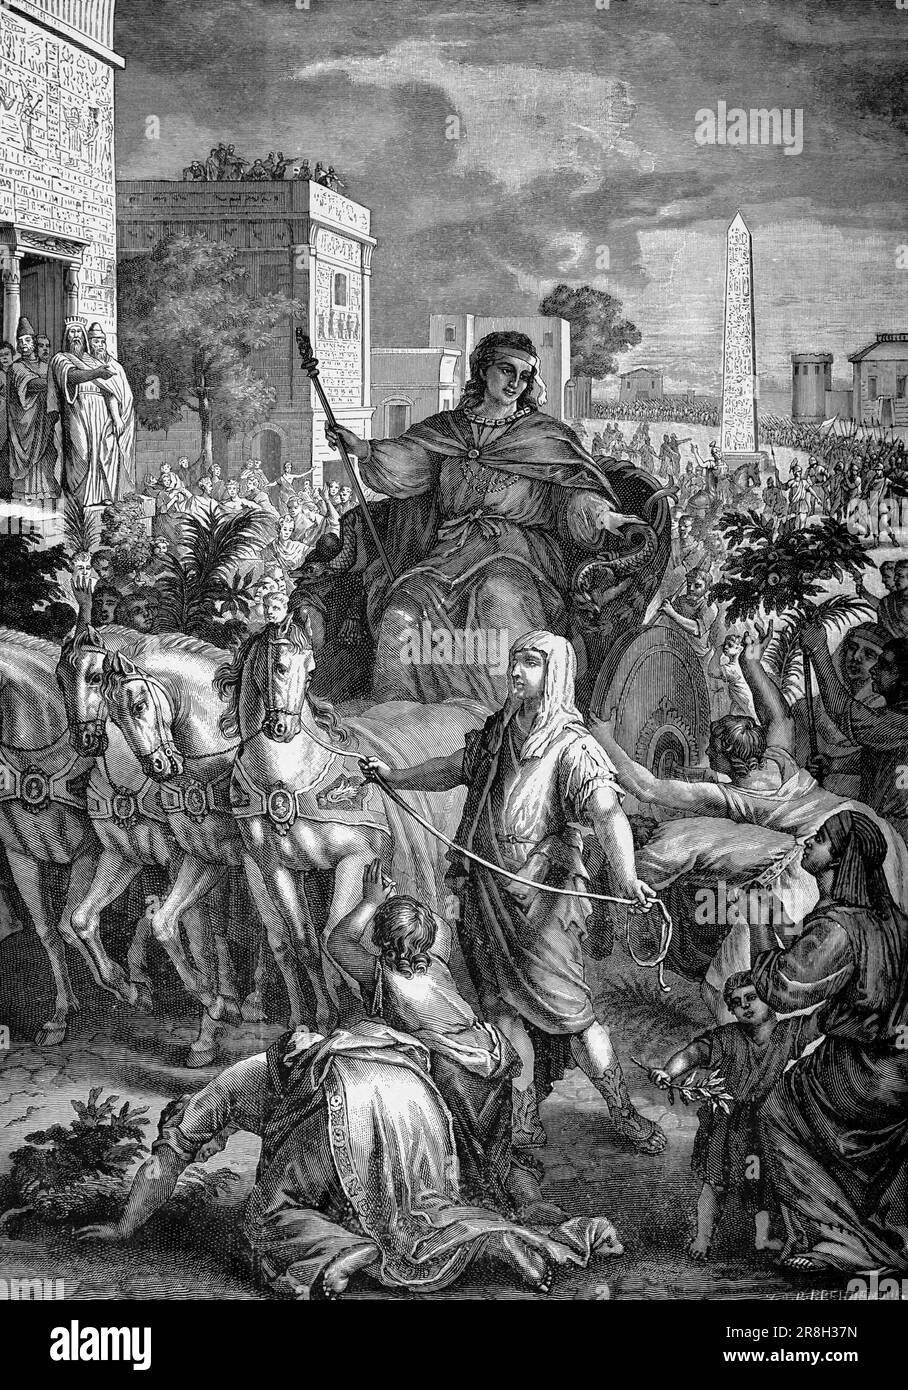 Exaltation de Joseph, Mose du premier livre, chapitre 41, verset 37-57, ancien Testament, Bible, illustration historique 1890 Banque D'Images